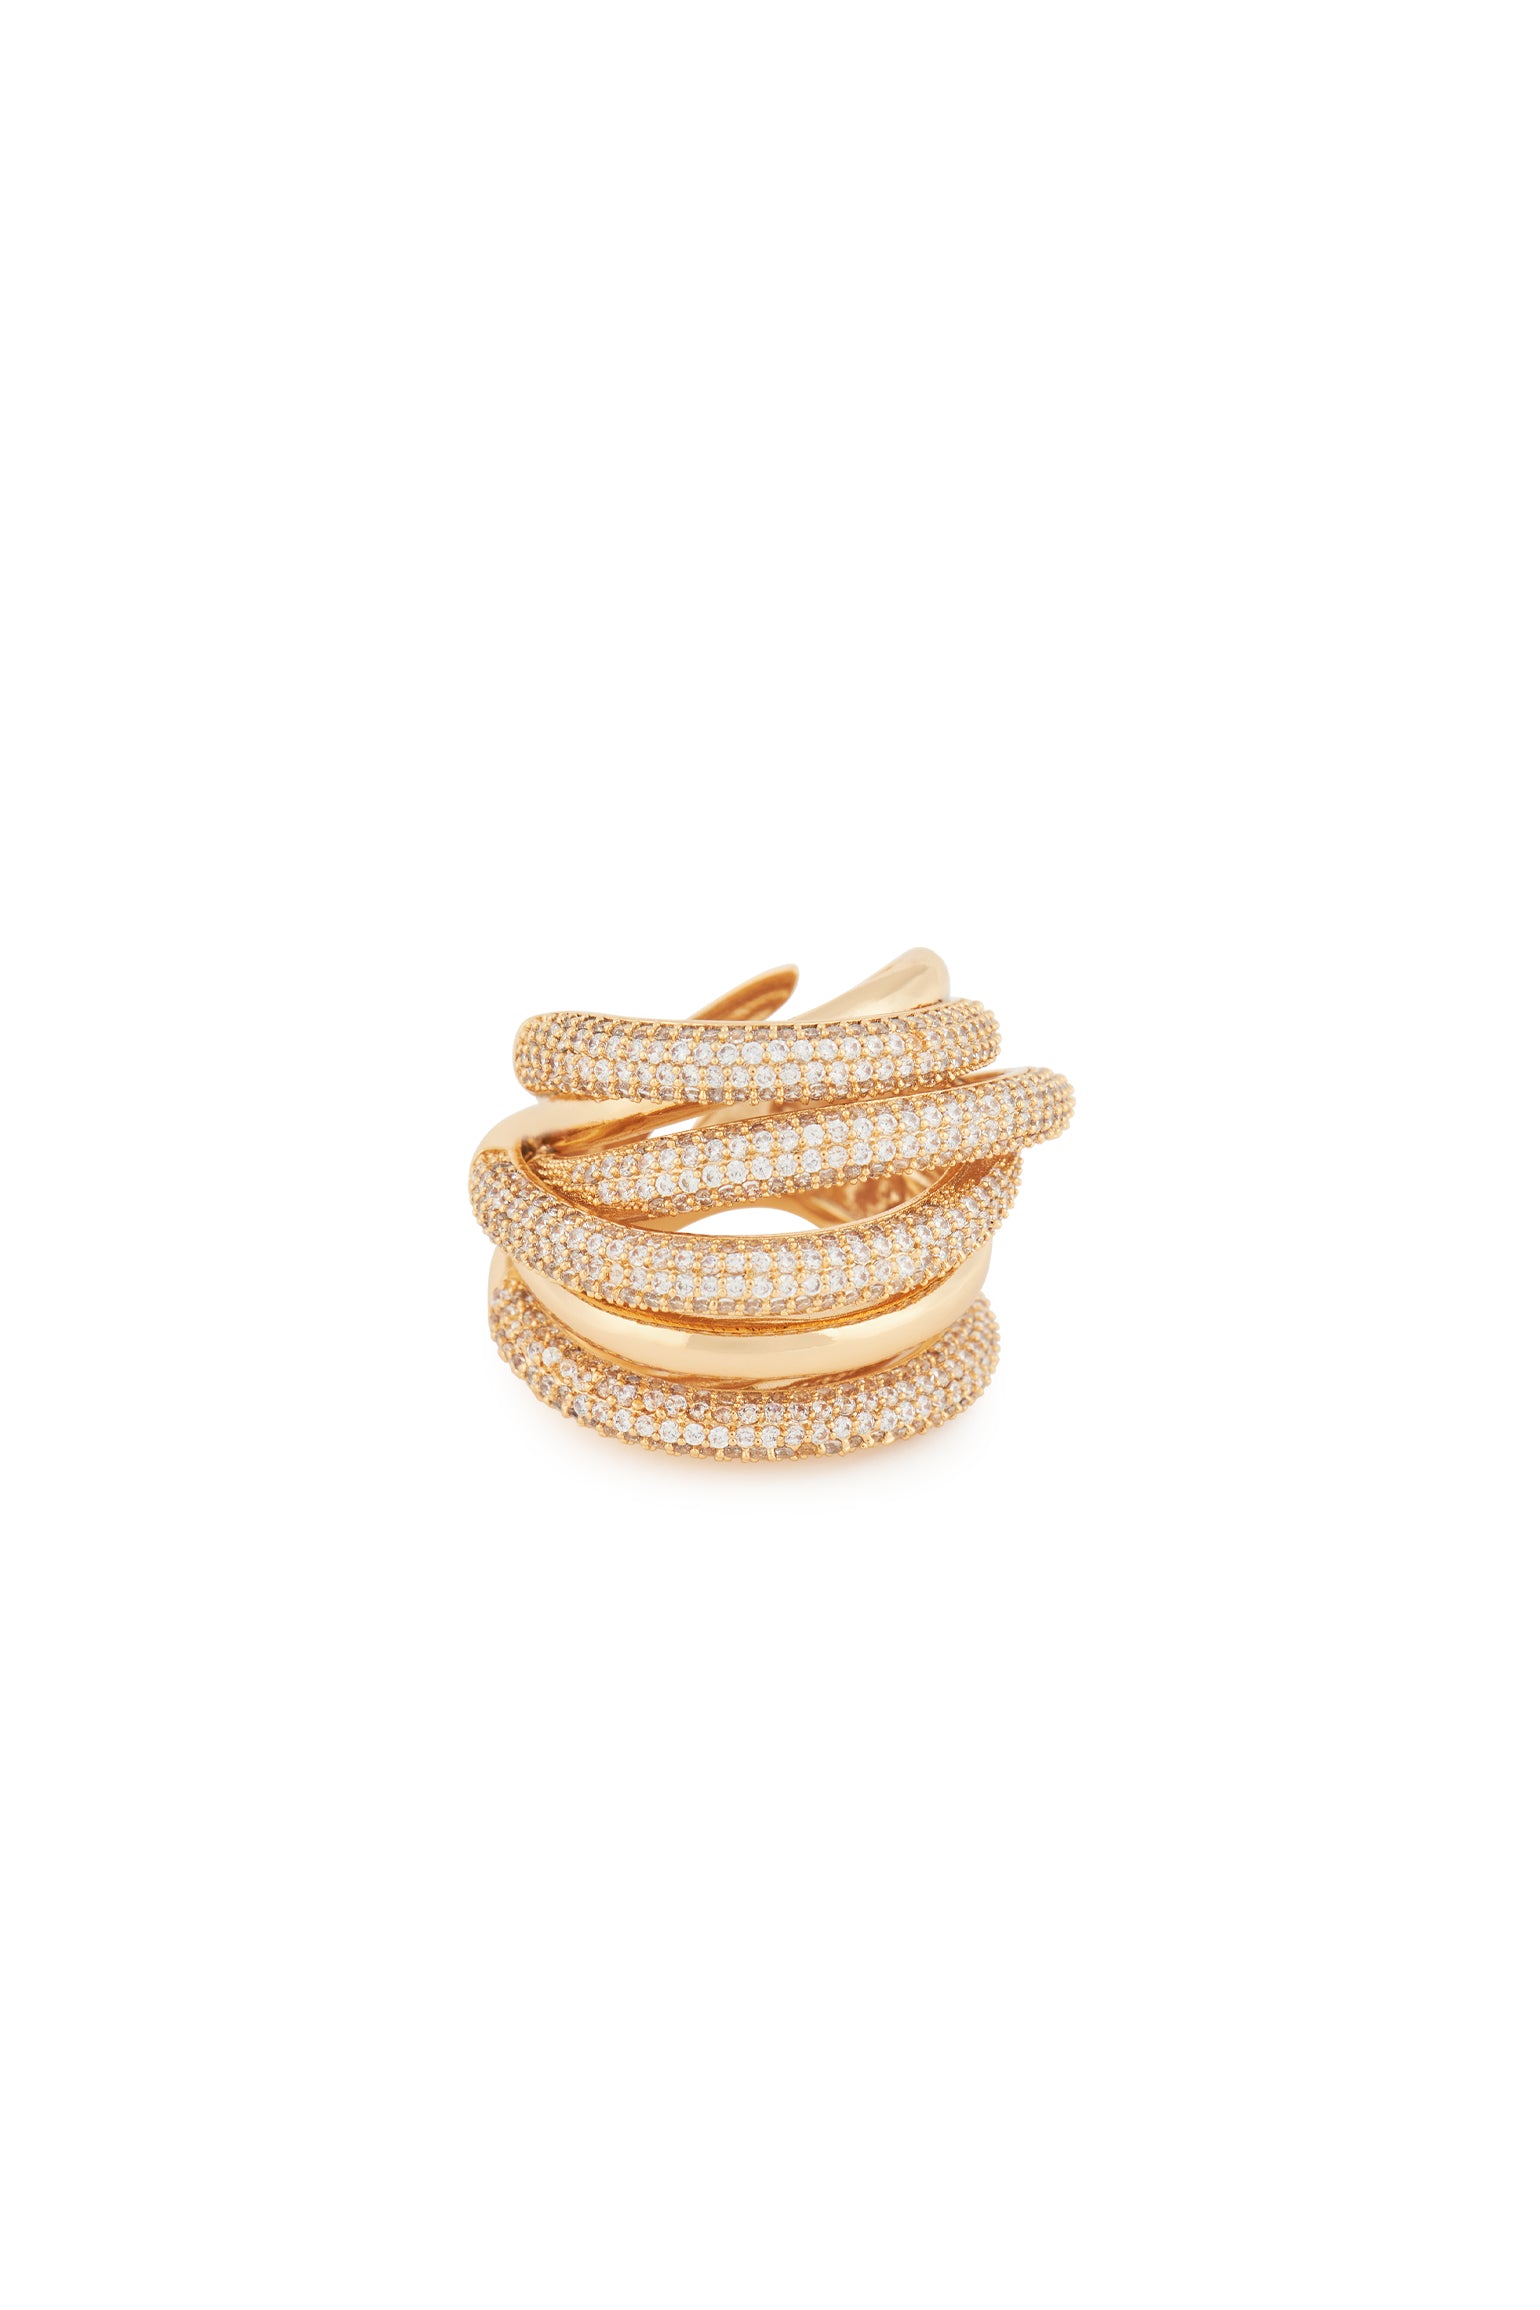 MELUSINA BIJOUX Gold Braided Wire Ring